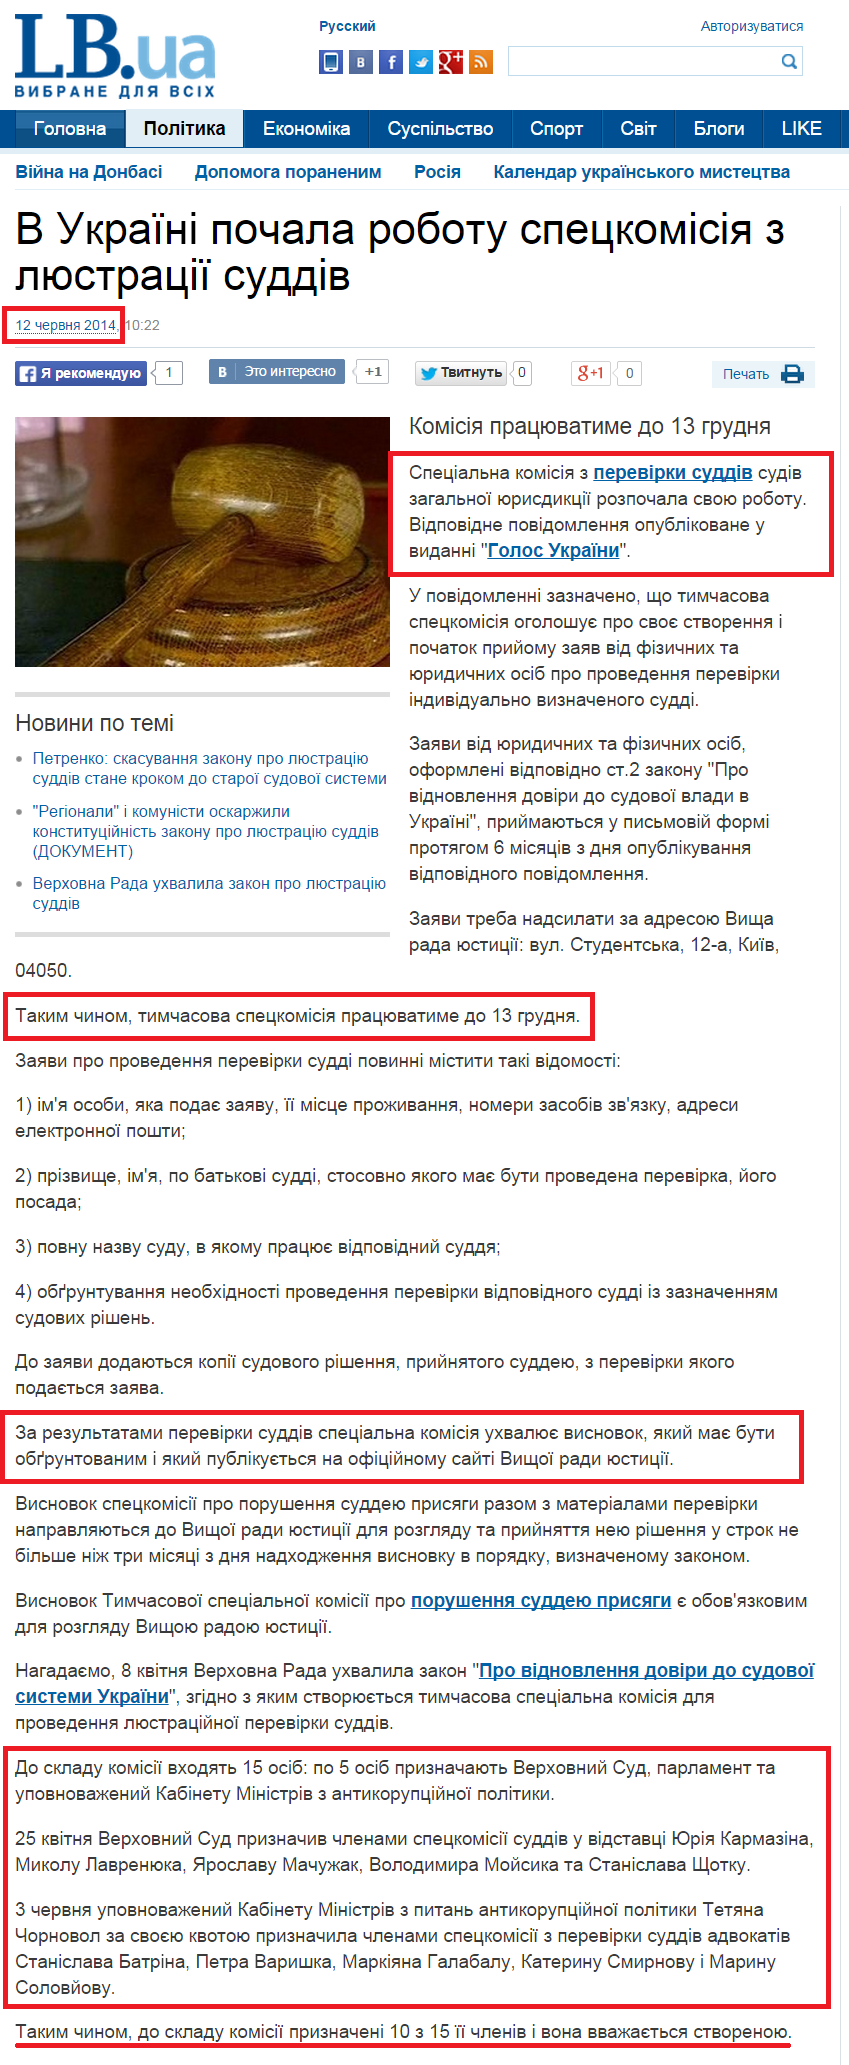 http://ukr.lb.ua/news/2014/06/12/269524_ukraine_nachala_rabotu_spetskomissiya.html